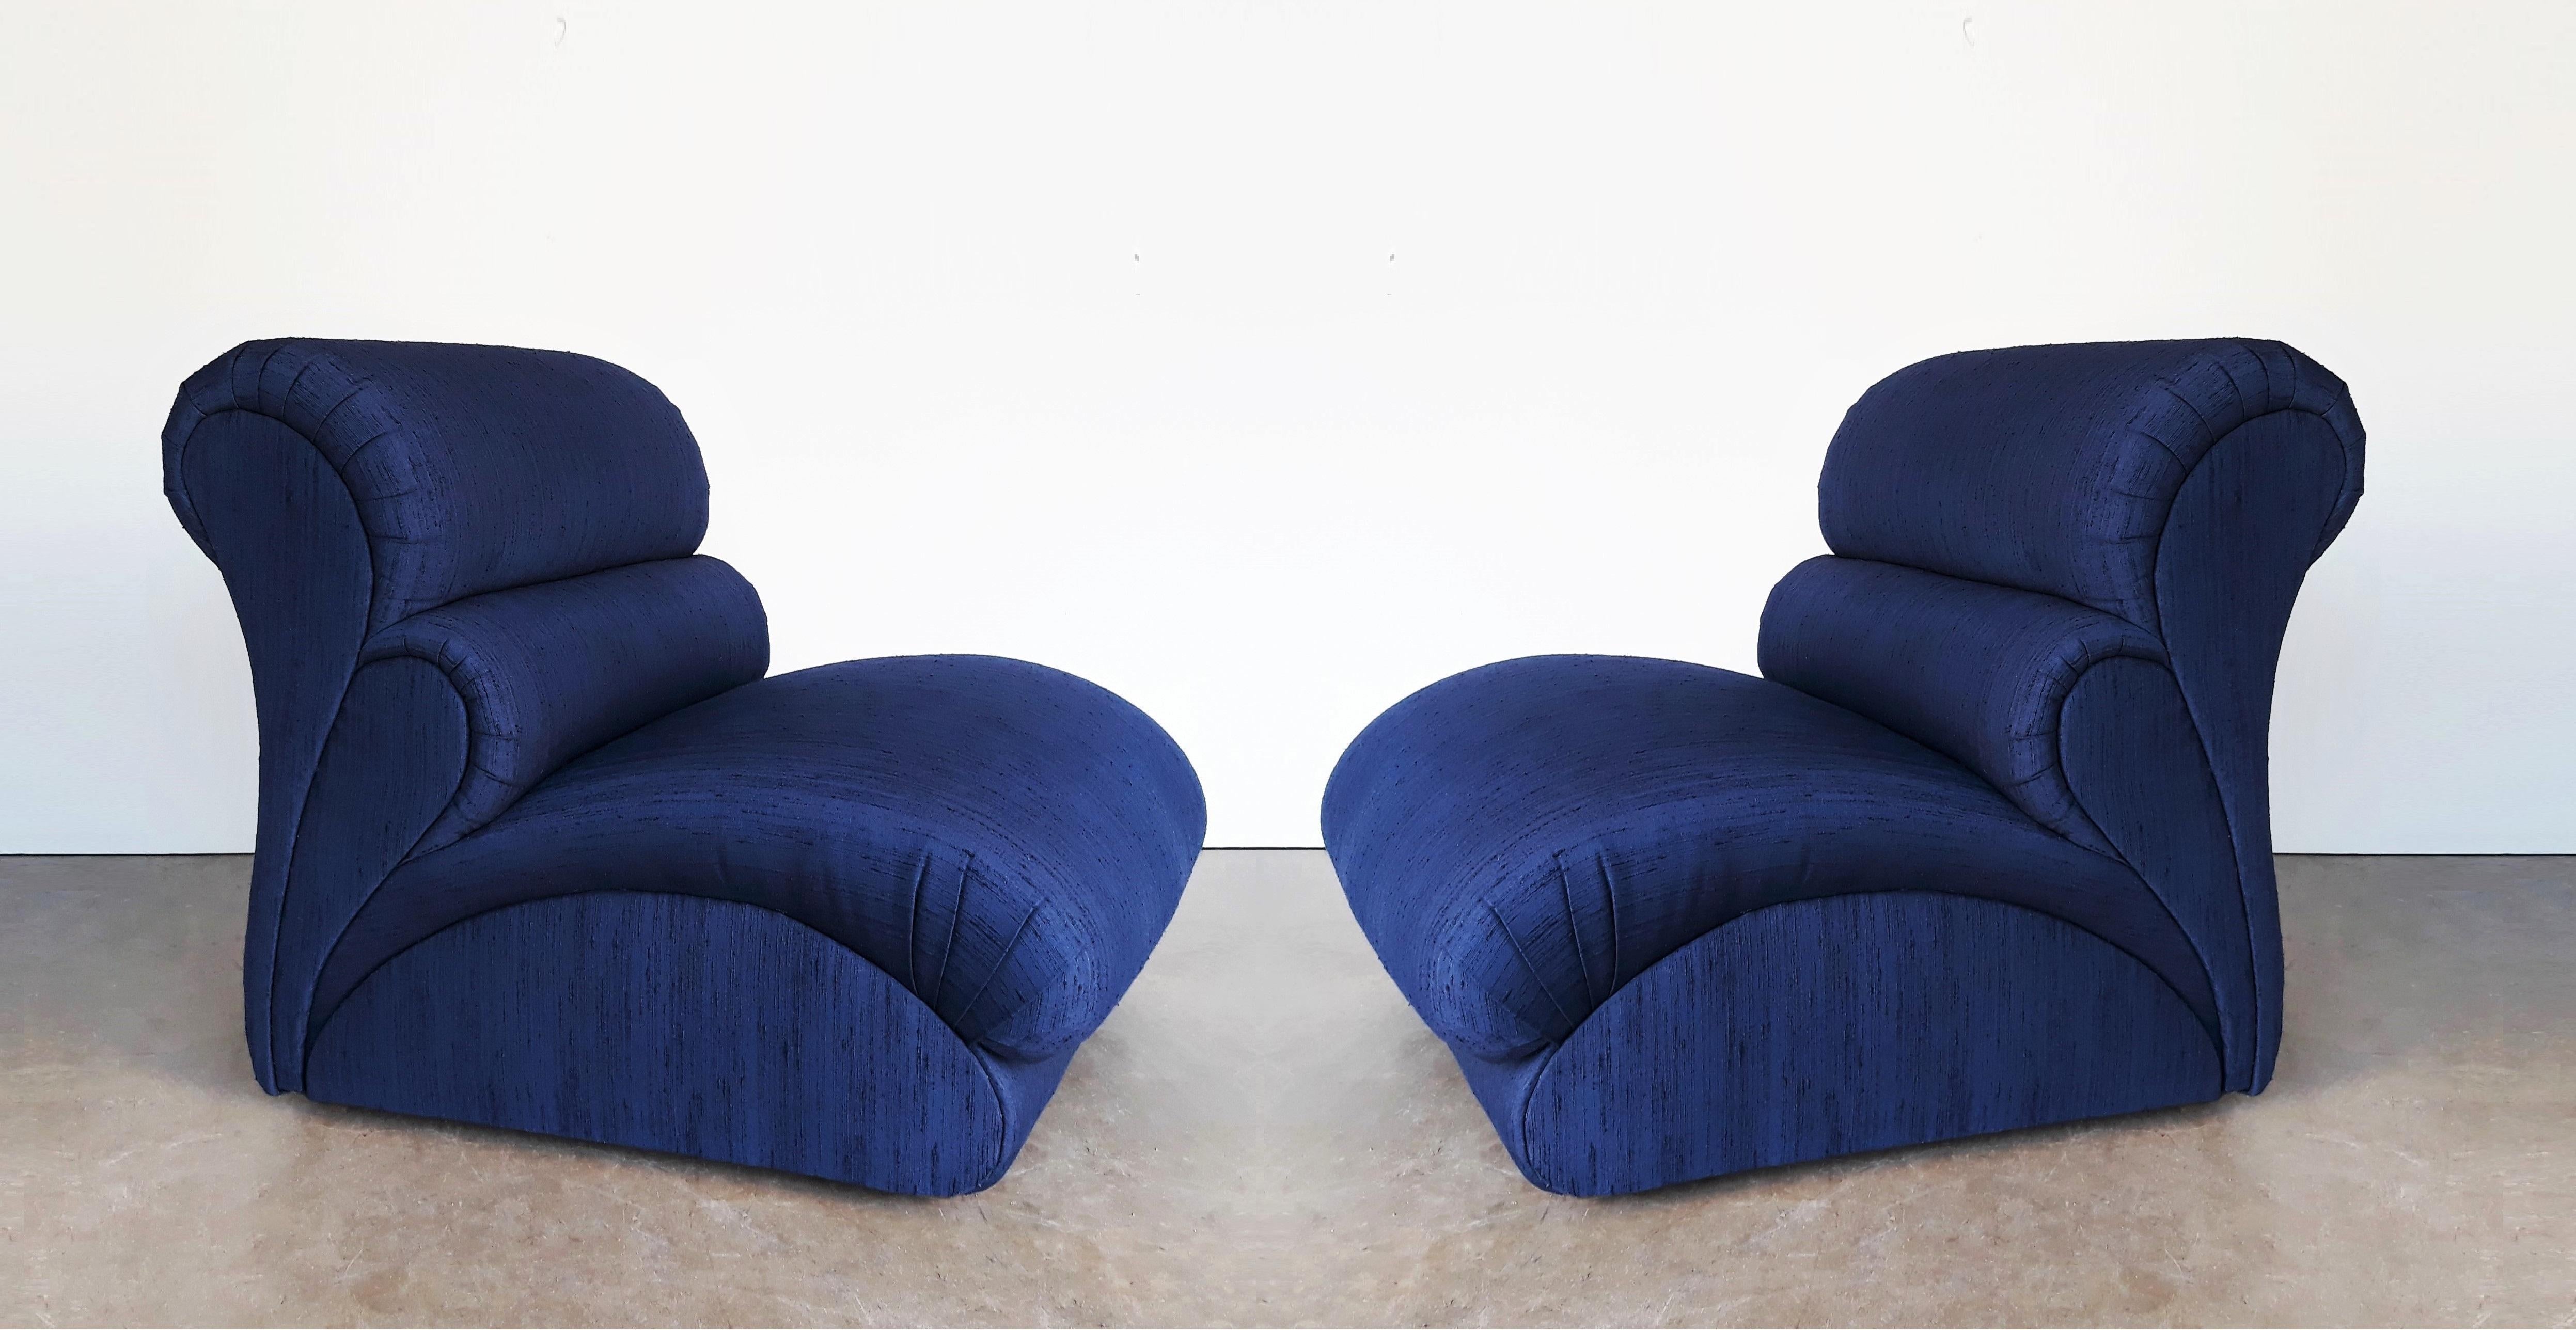 Diese atemberaubenden Avant Garde Lounge/Slipper Stühle von Weiman Furniture sind keine Ausnahme. Von ihrer optisch auffälligen Silhouette bis hin zu den überdimensionierten, gepolsterten Rahmen steht der stilvolle Komfort an erster Stelle; sie sind